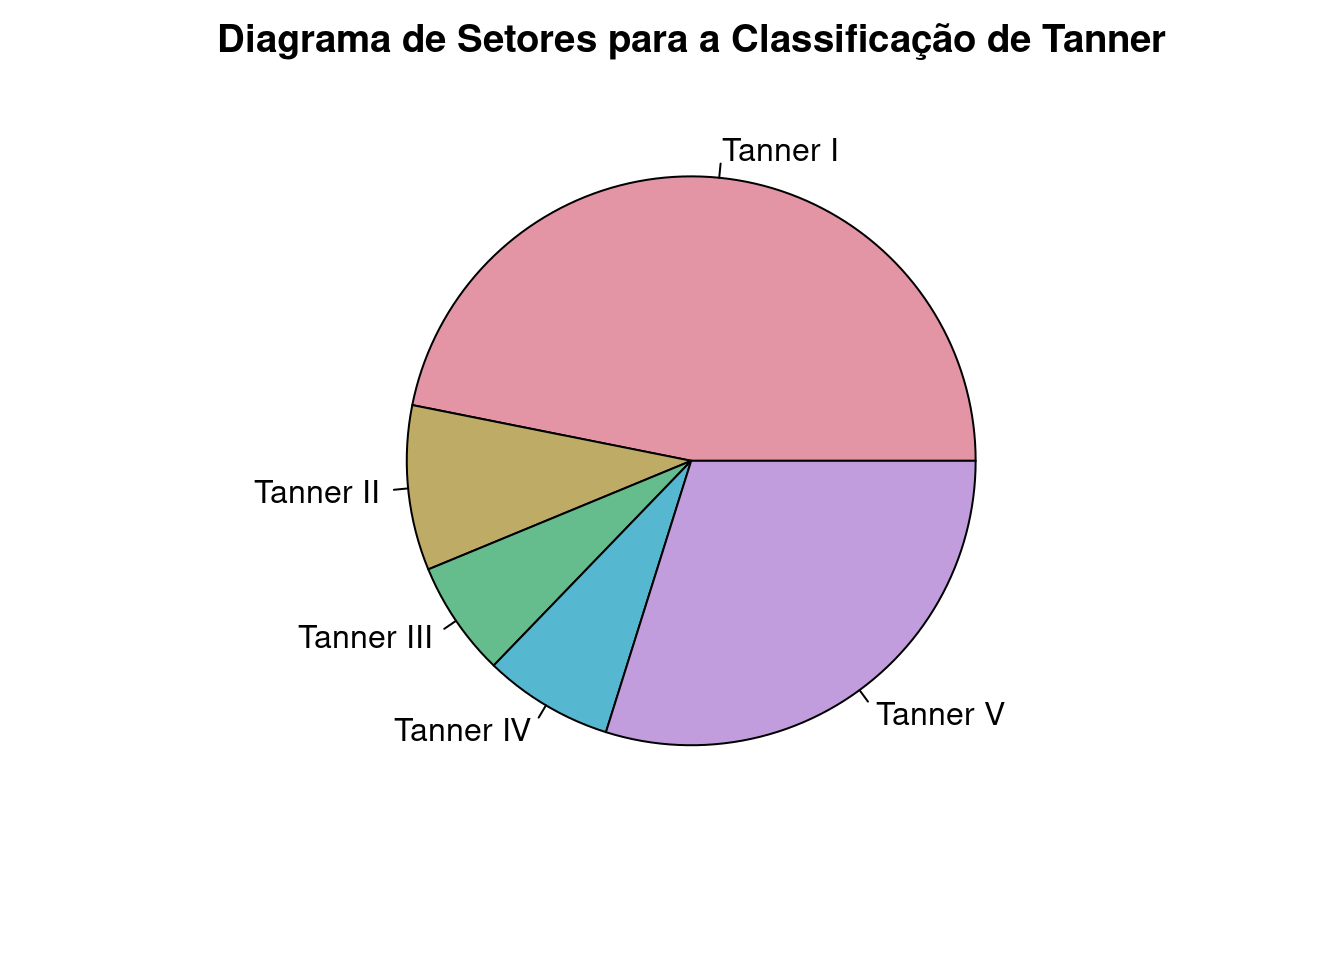 Diagrama de setores das categorias de Tanner.